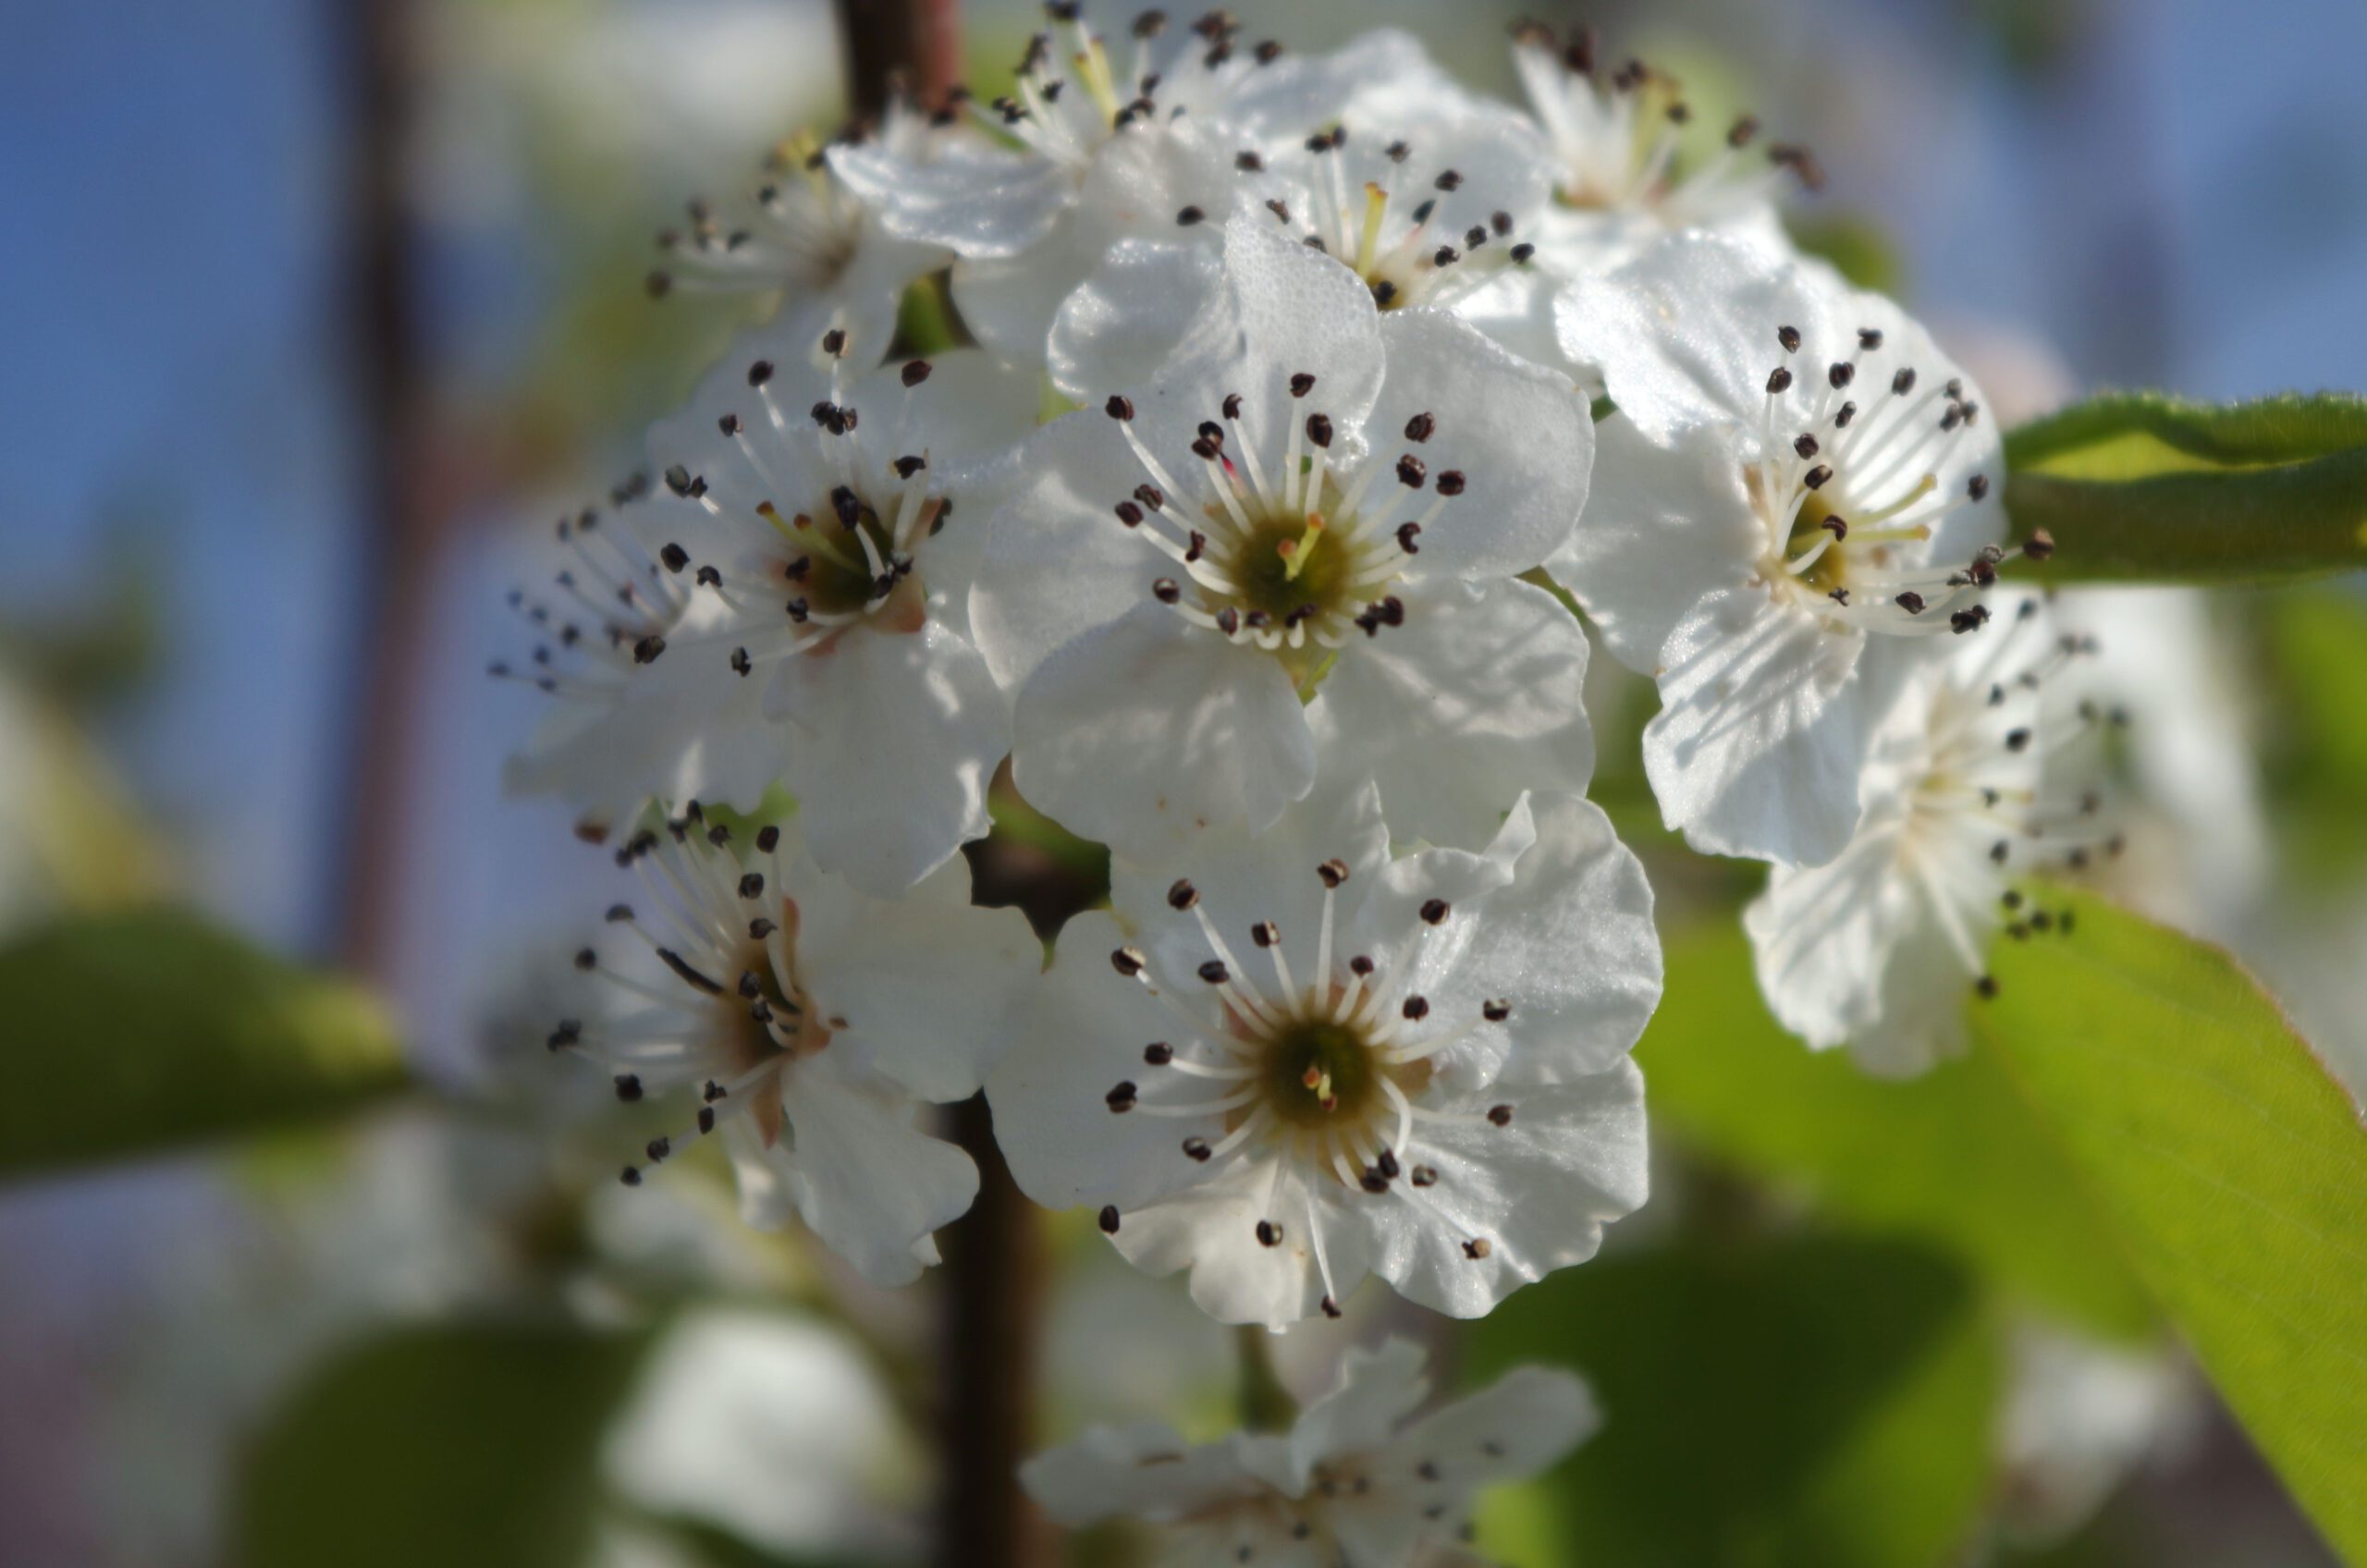 Pryus calleryana Chanticleer white flower blossom